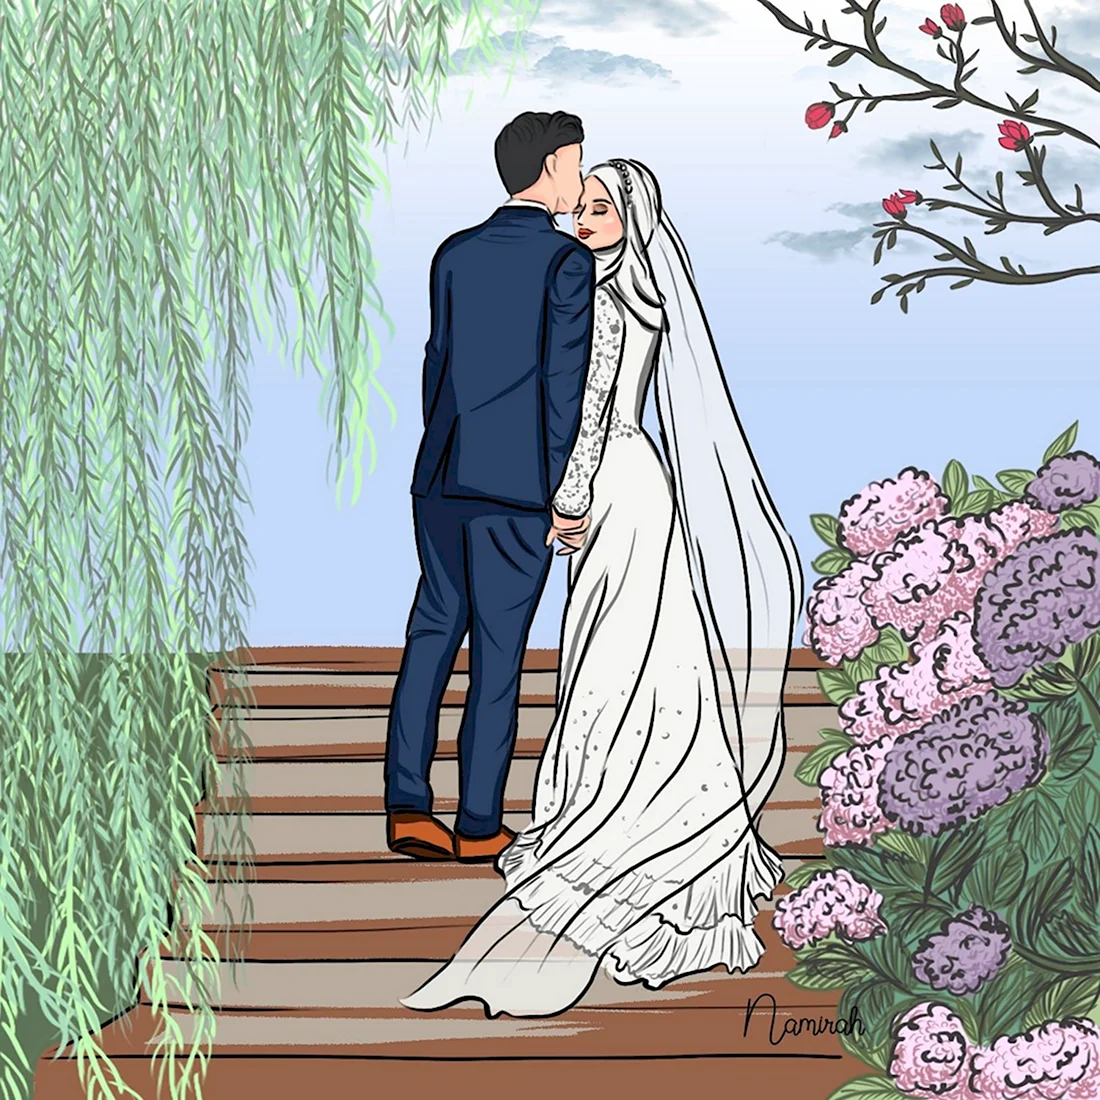 Иллюстрация мусульманской свадьбы. Поздравление на праздник